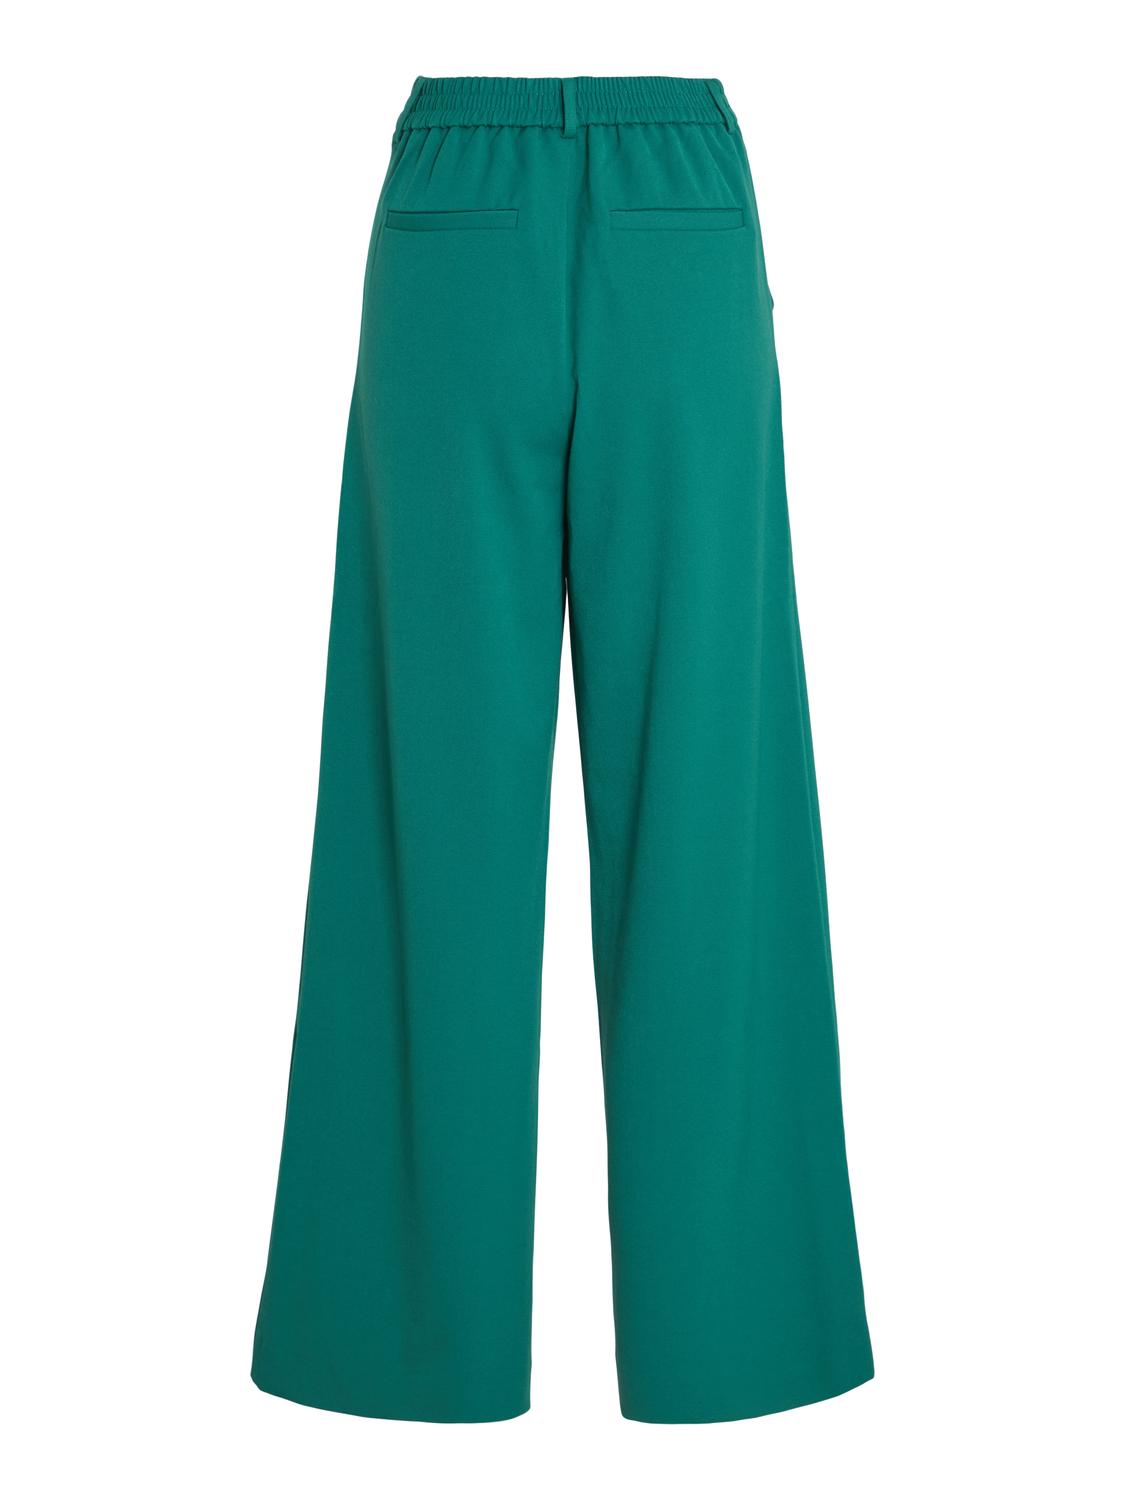 VIVARONE Pants - Ultramarine Green